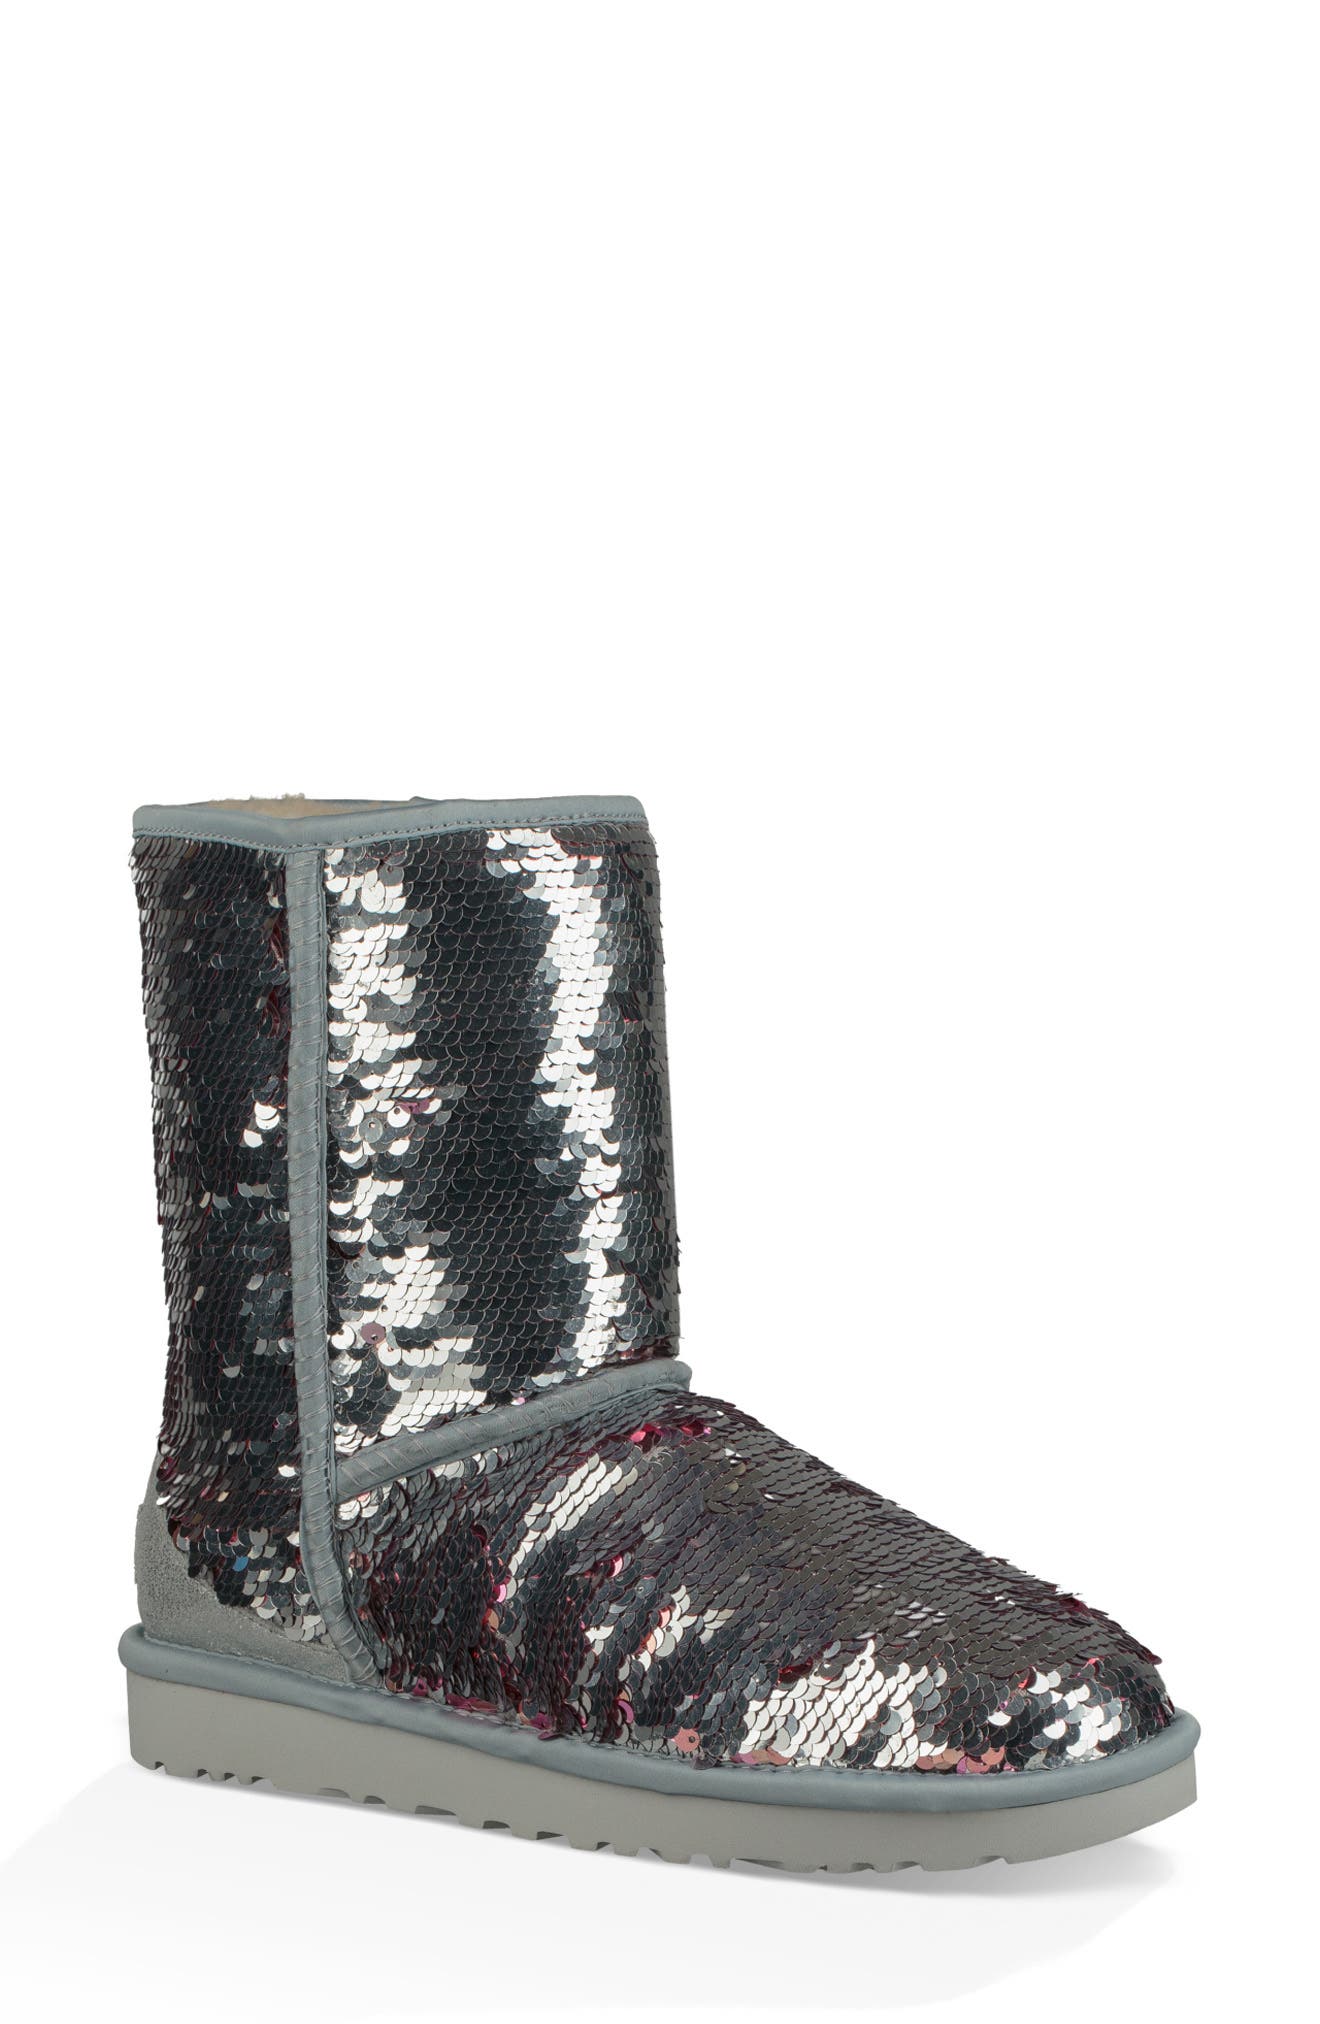 ugg waterproof boots nordstrom rack